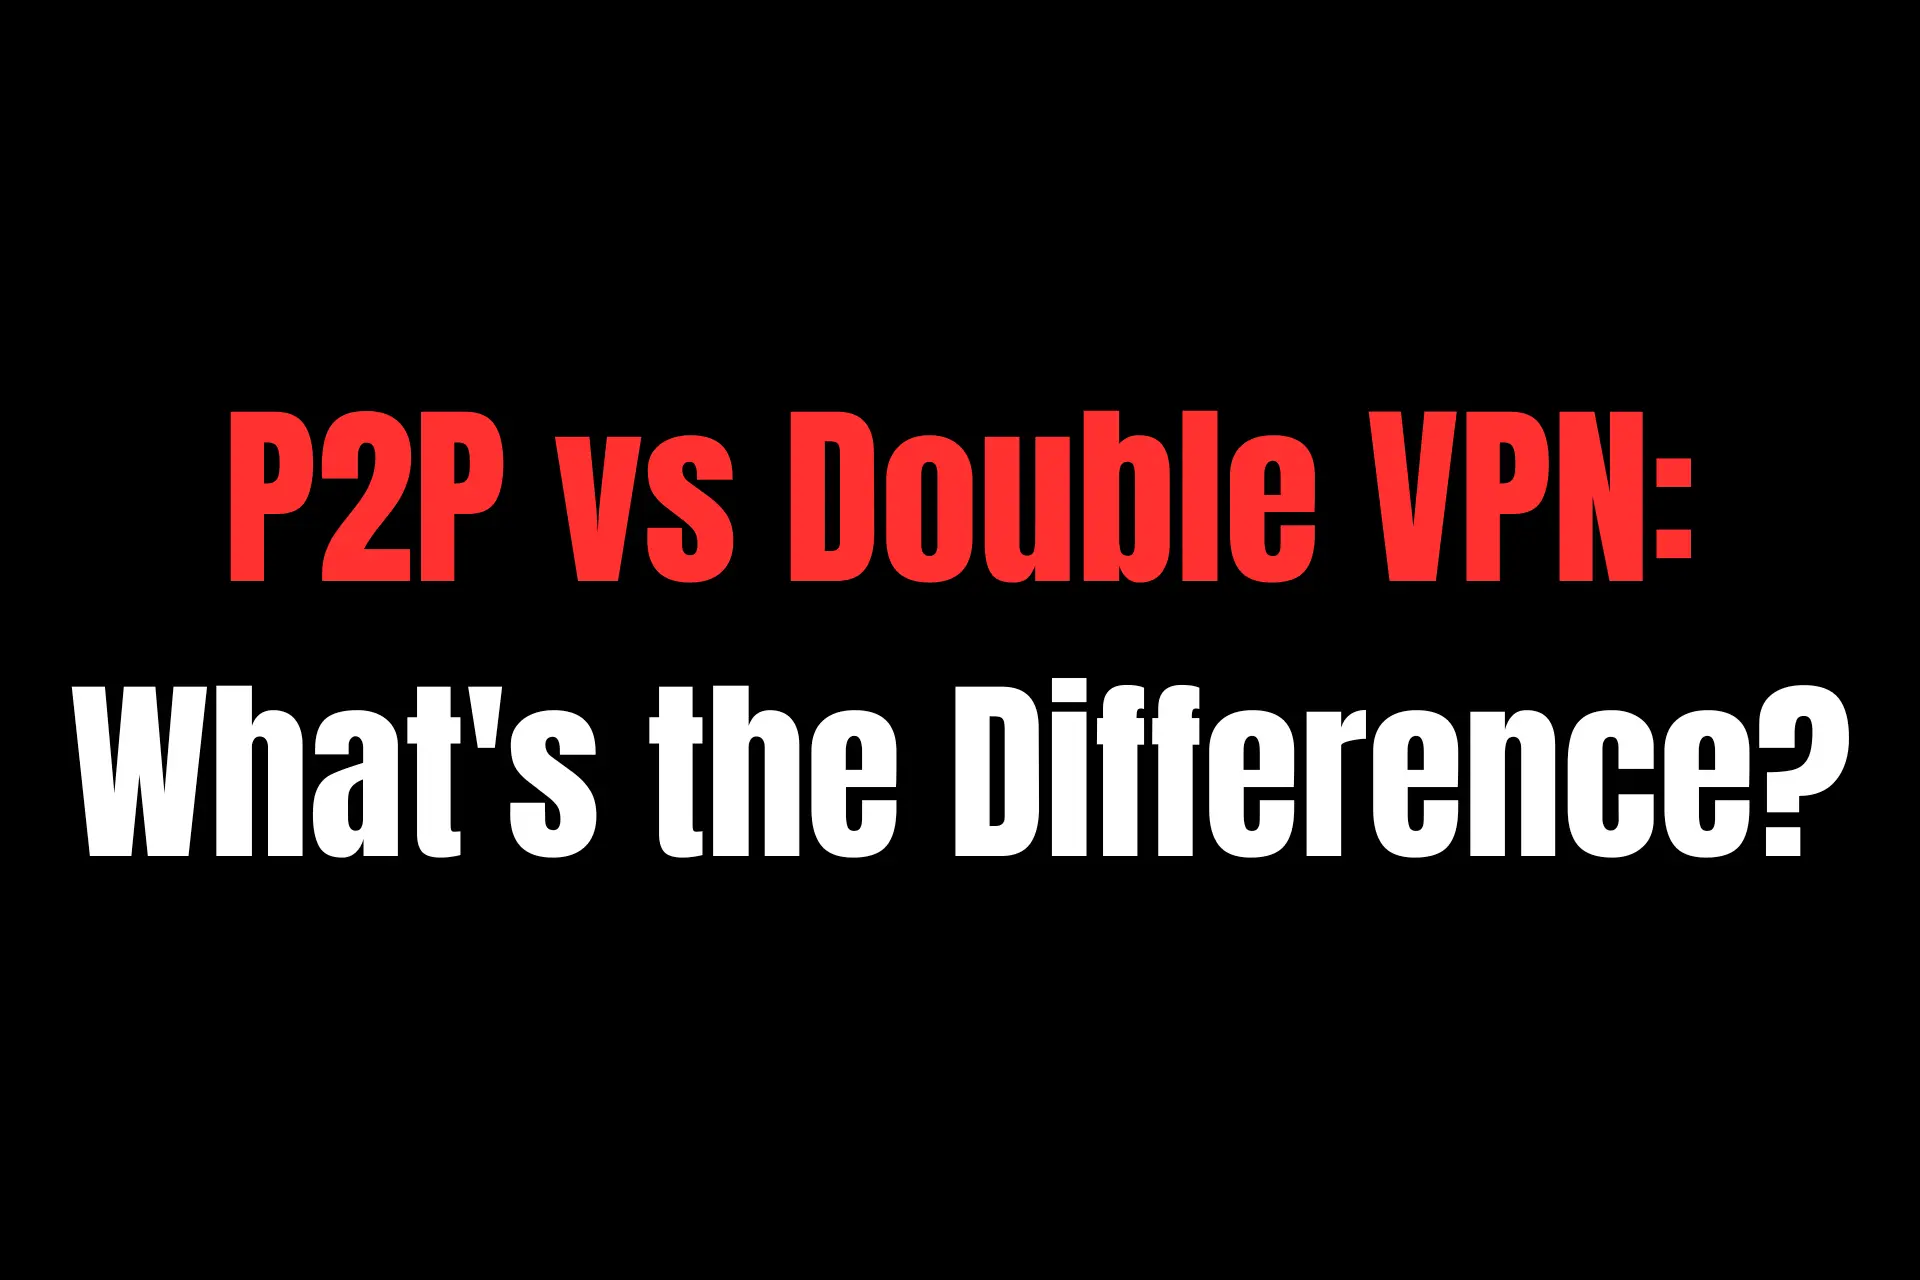 P2P vs double VPN